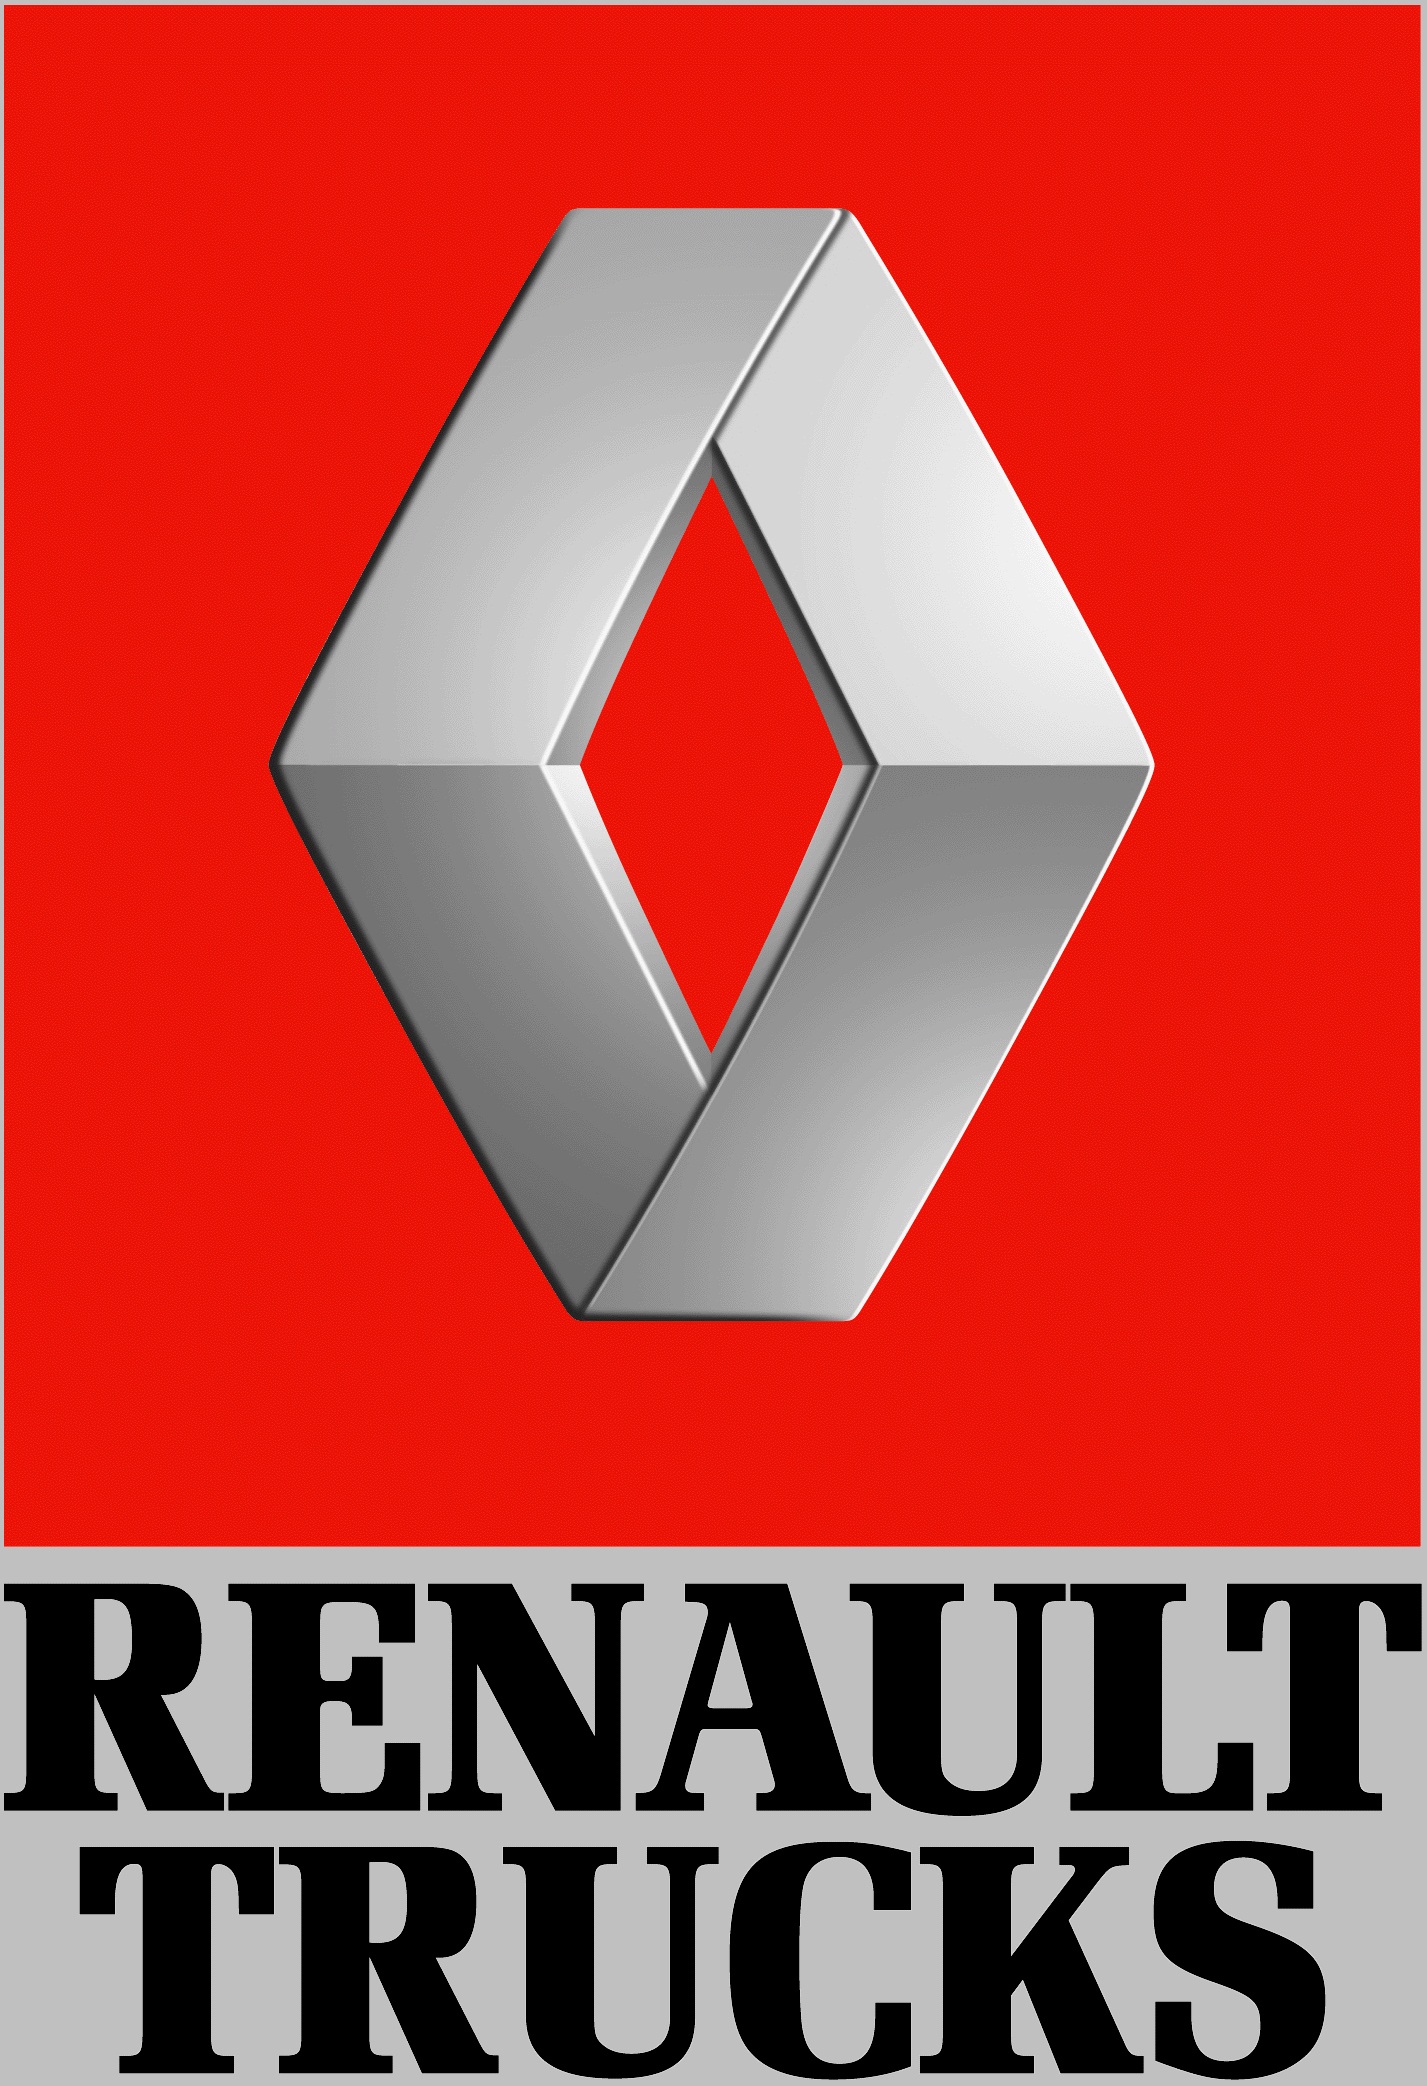 Renault_Trucks_logo.jpg